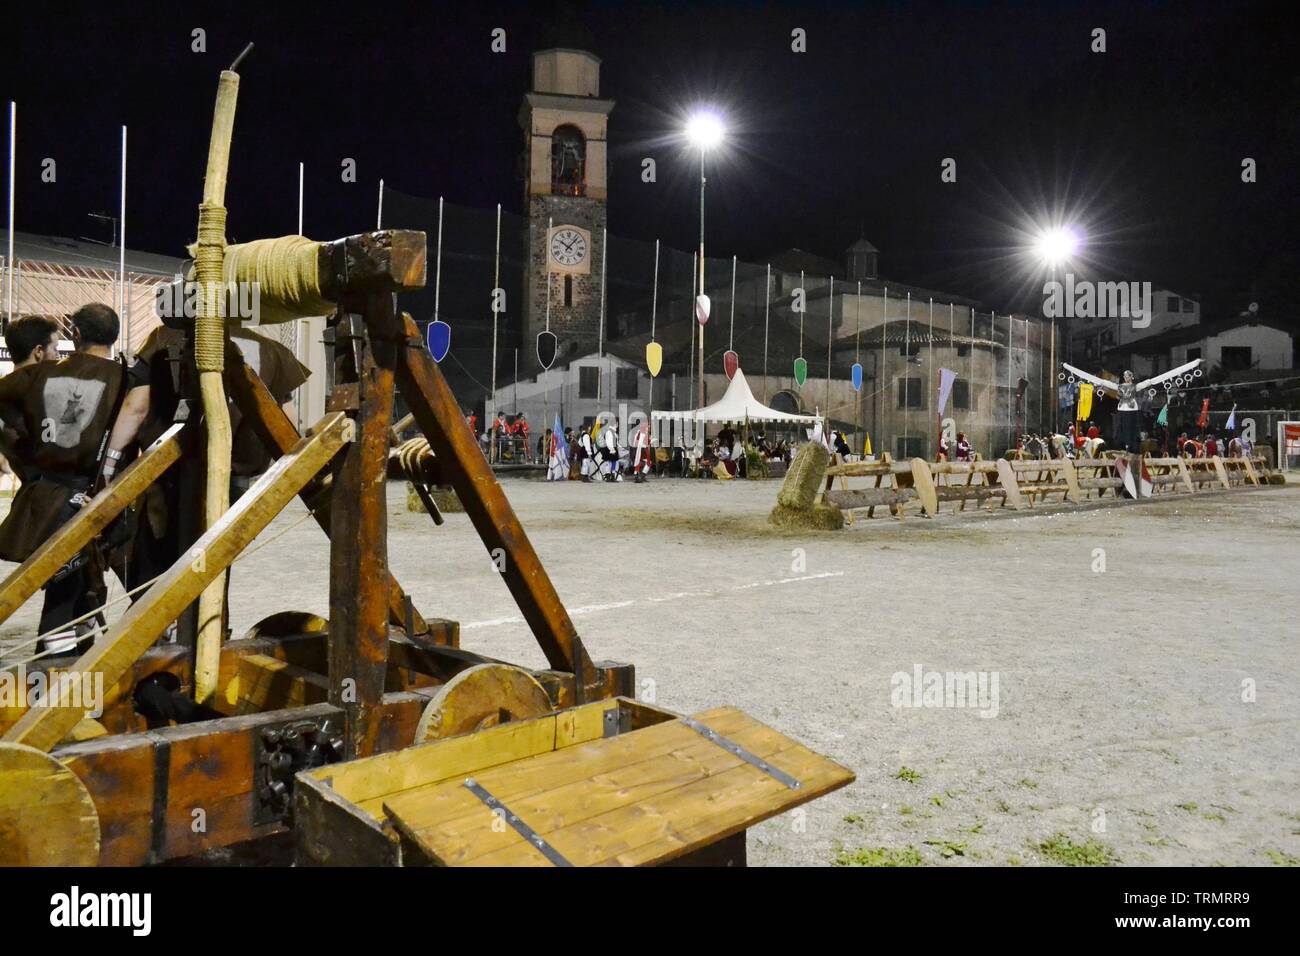 Primaluna/Italie - le 21 juin 2014 : catapulte médiévale moteur en bois exposés lors de la traditionnelle Fête du village de six fractions de la ville. Banque D'Images